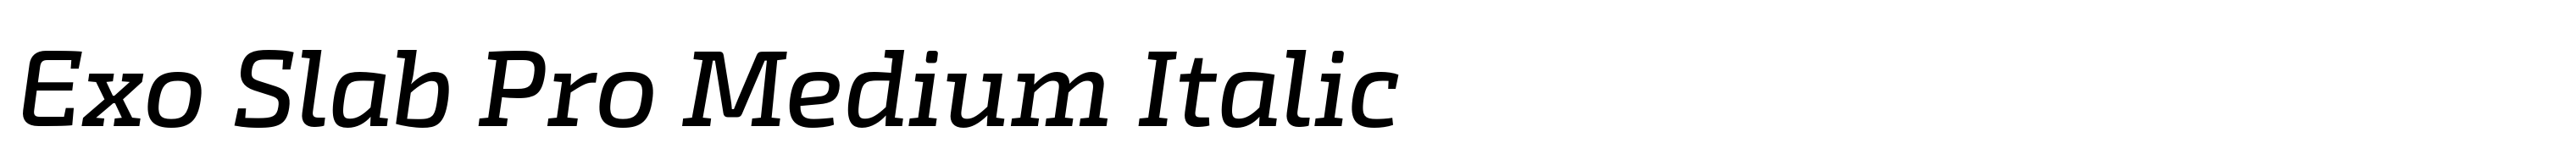 Exo Slab Pro Medium Italic